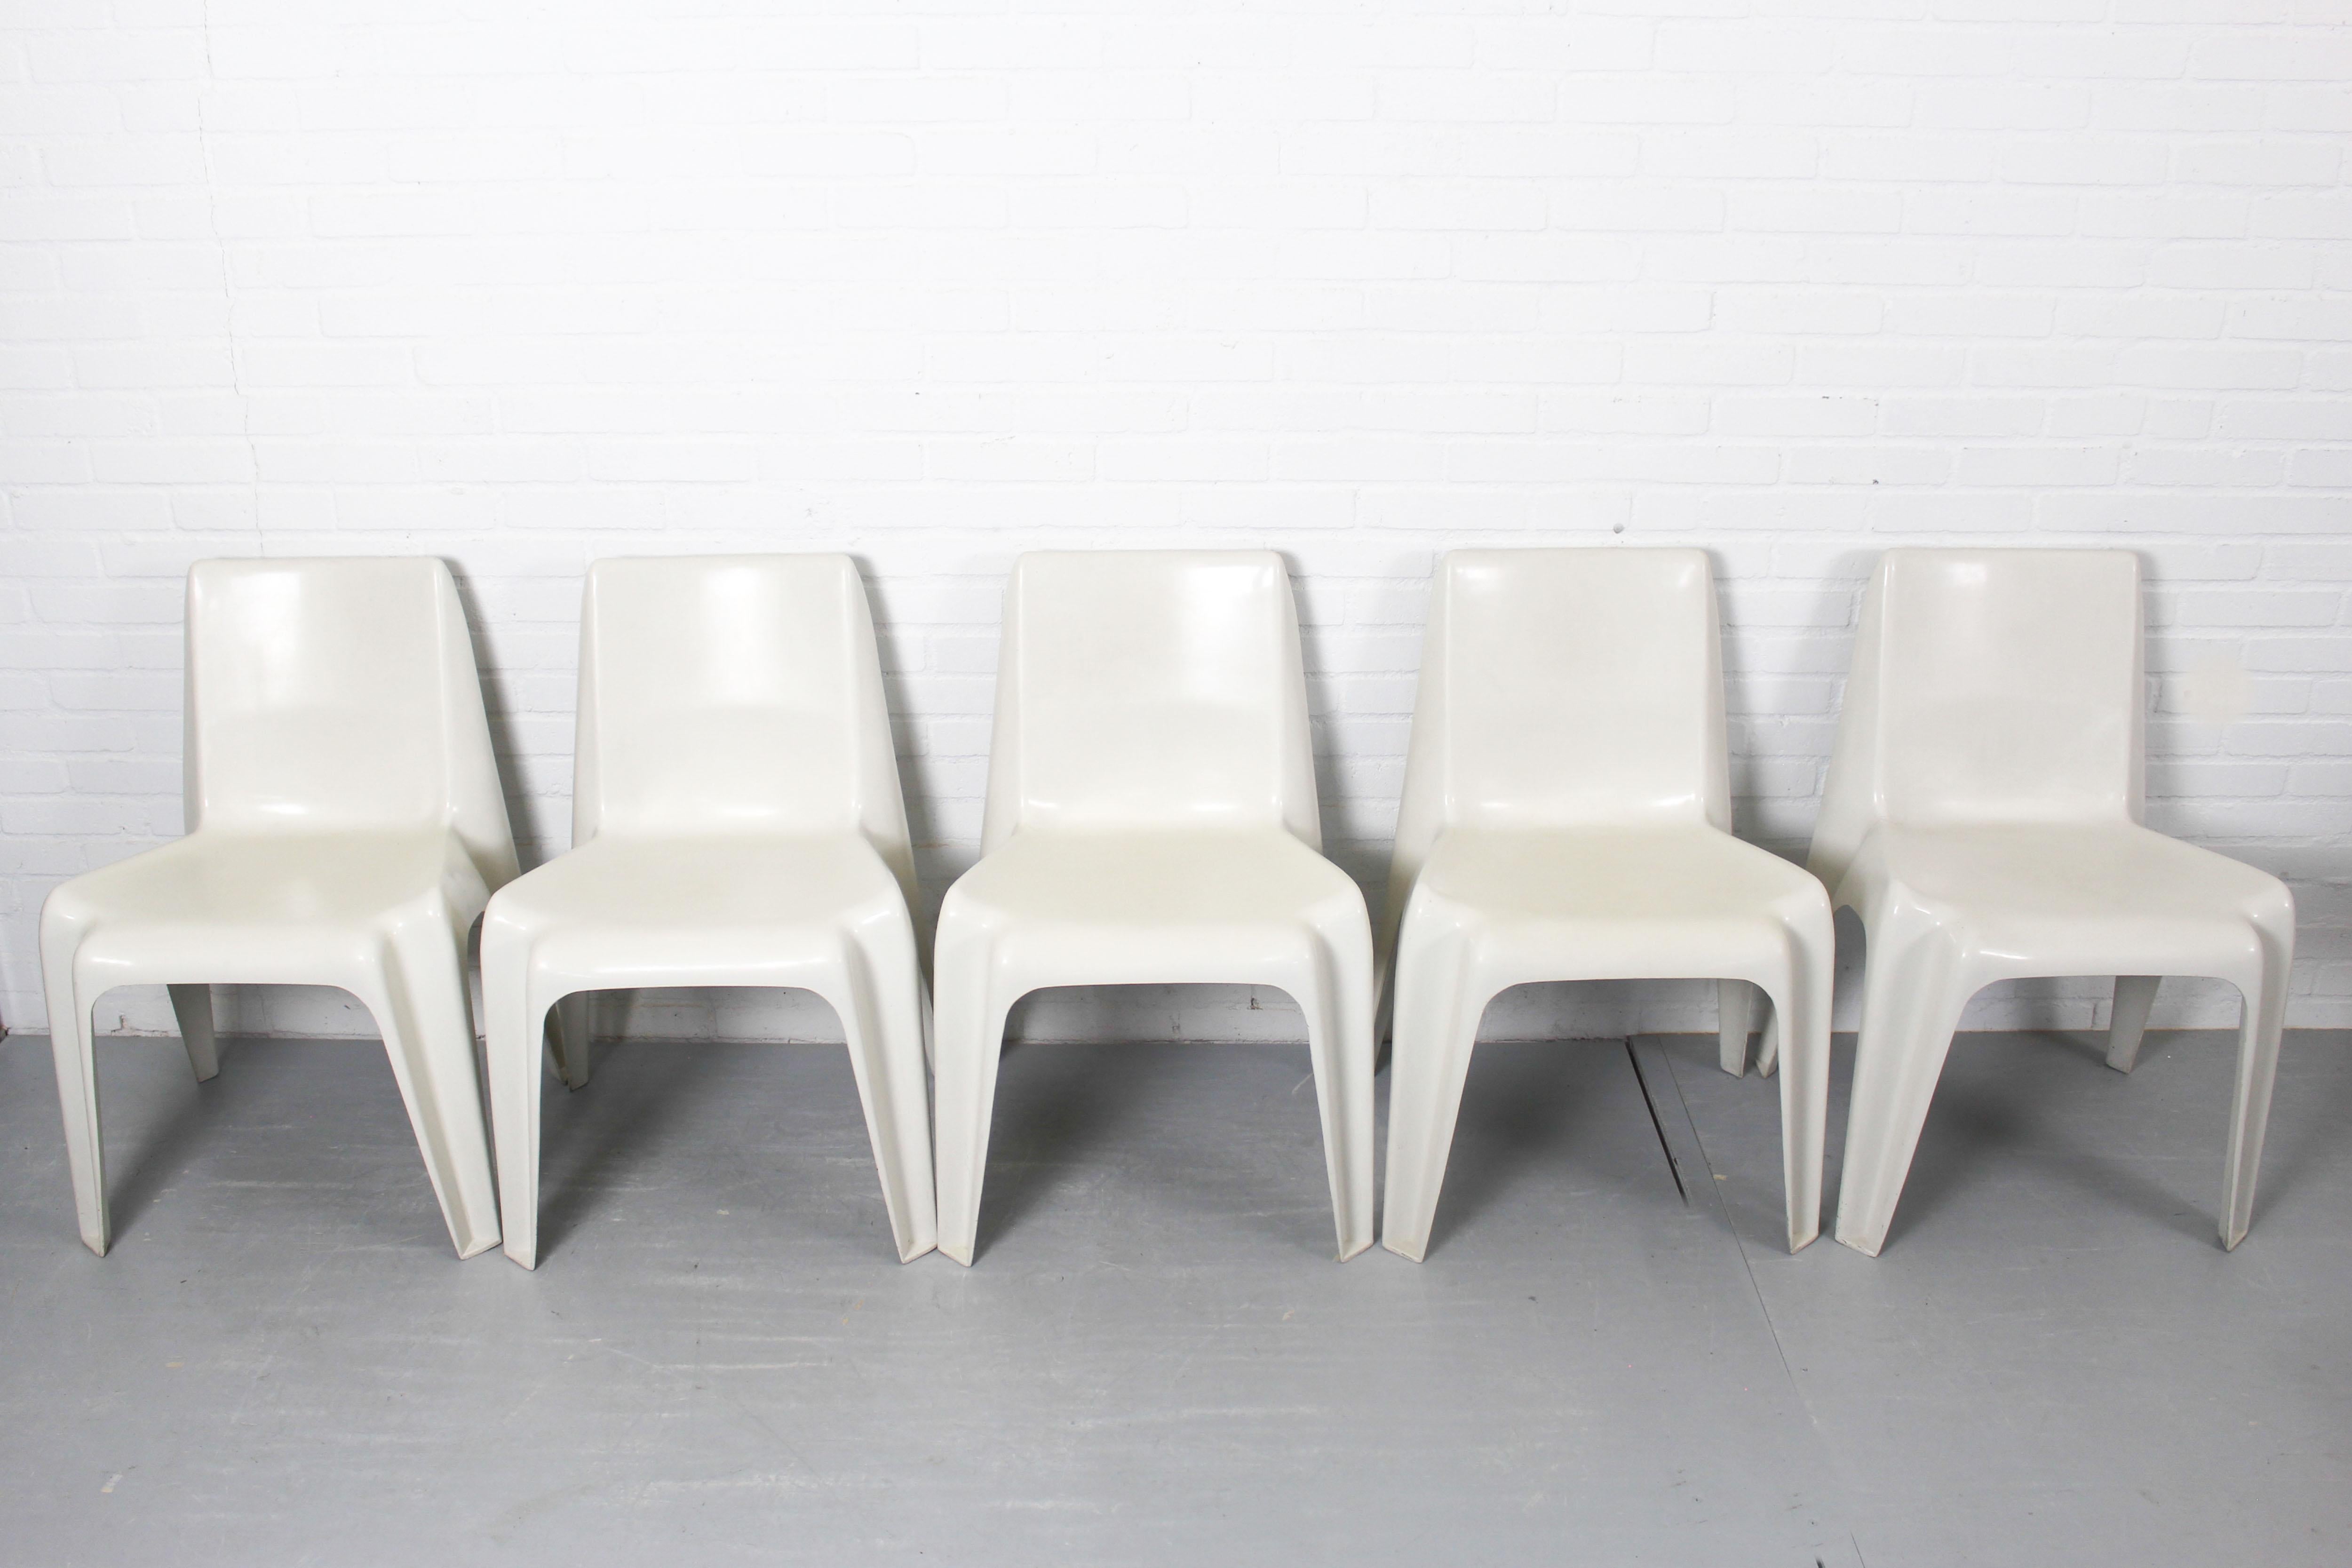 Set of 5 chairs model no BA 1171 designed by Helmut Bätzner for Bofinger, German For Sale 3